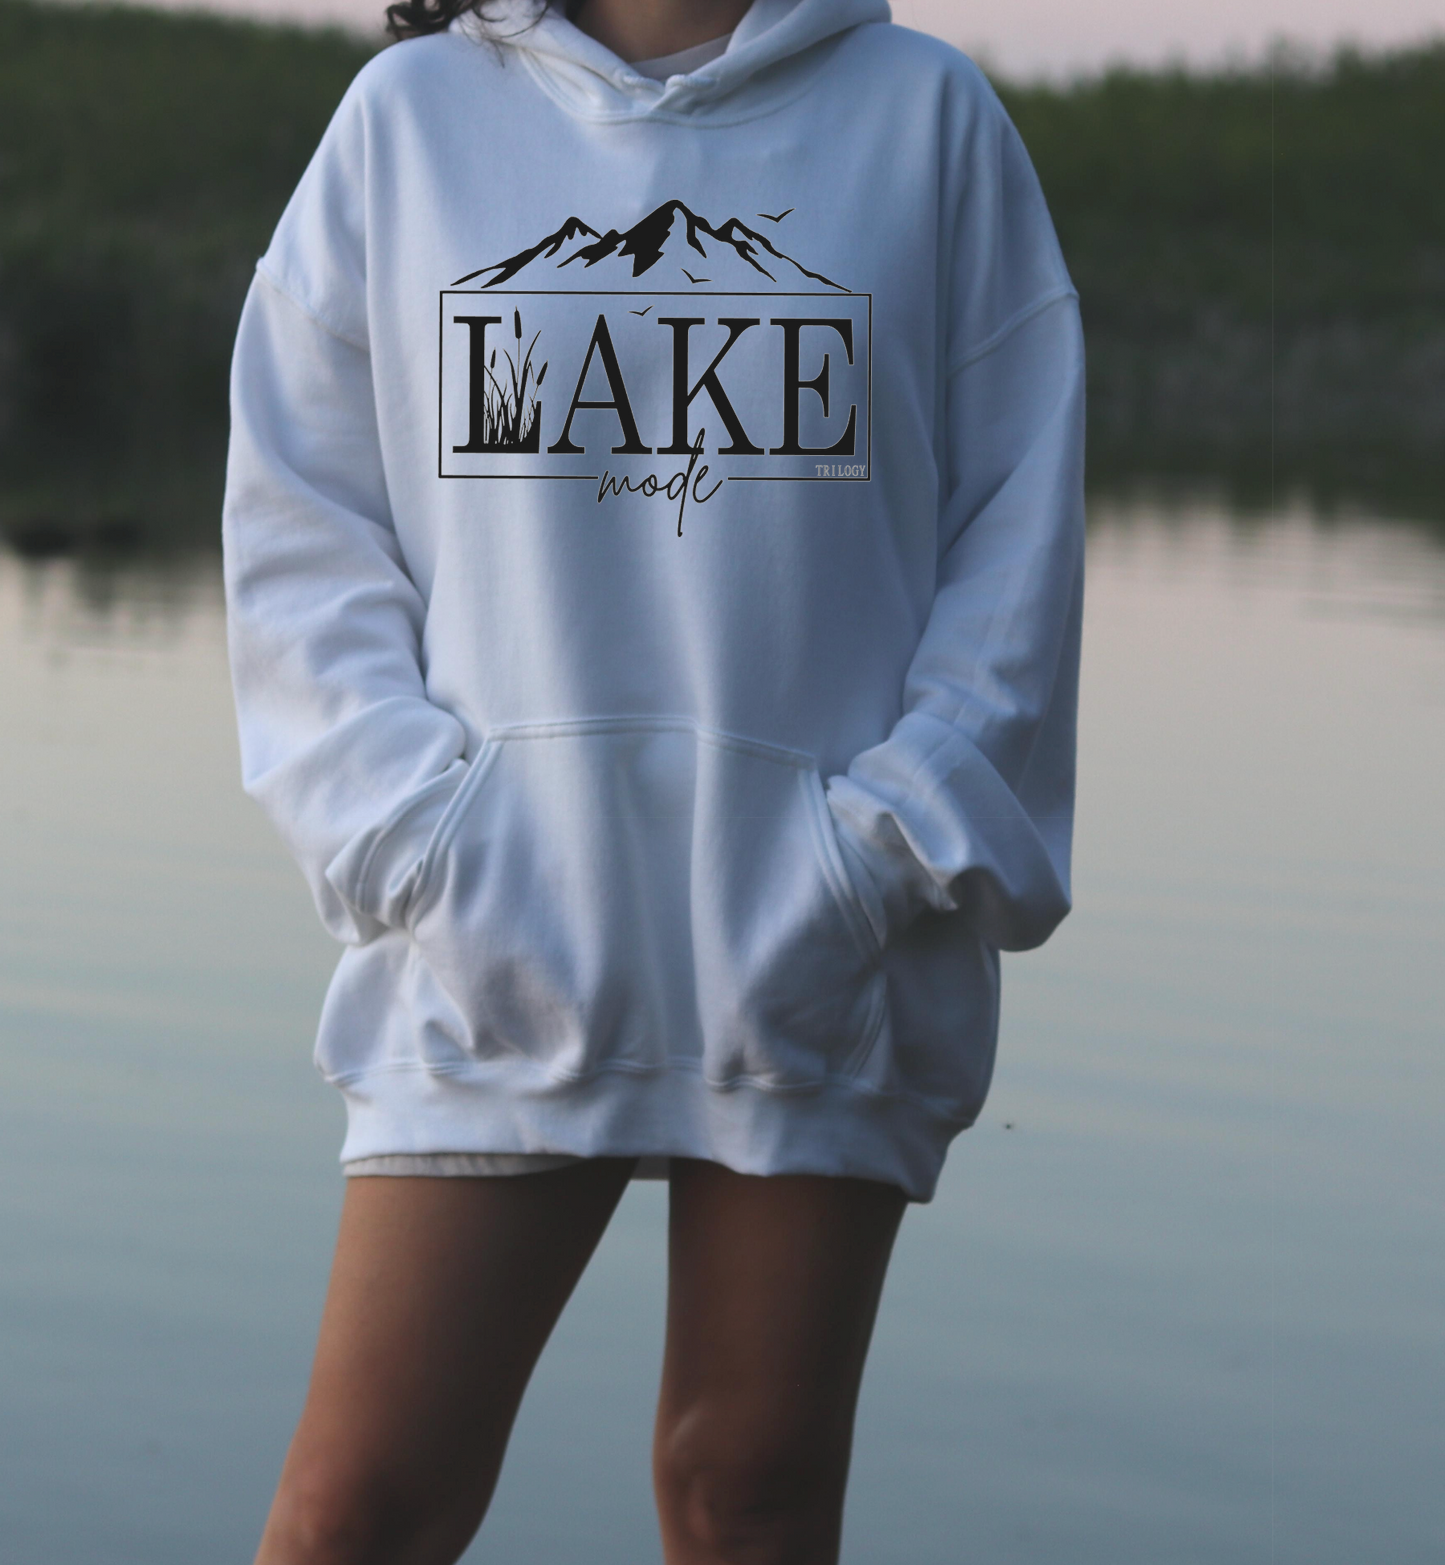 Lake Hoodie